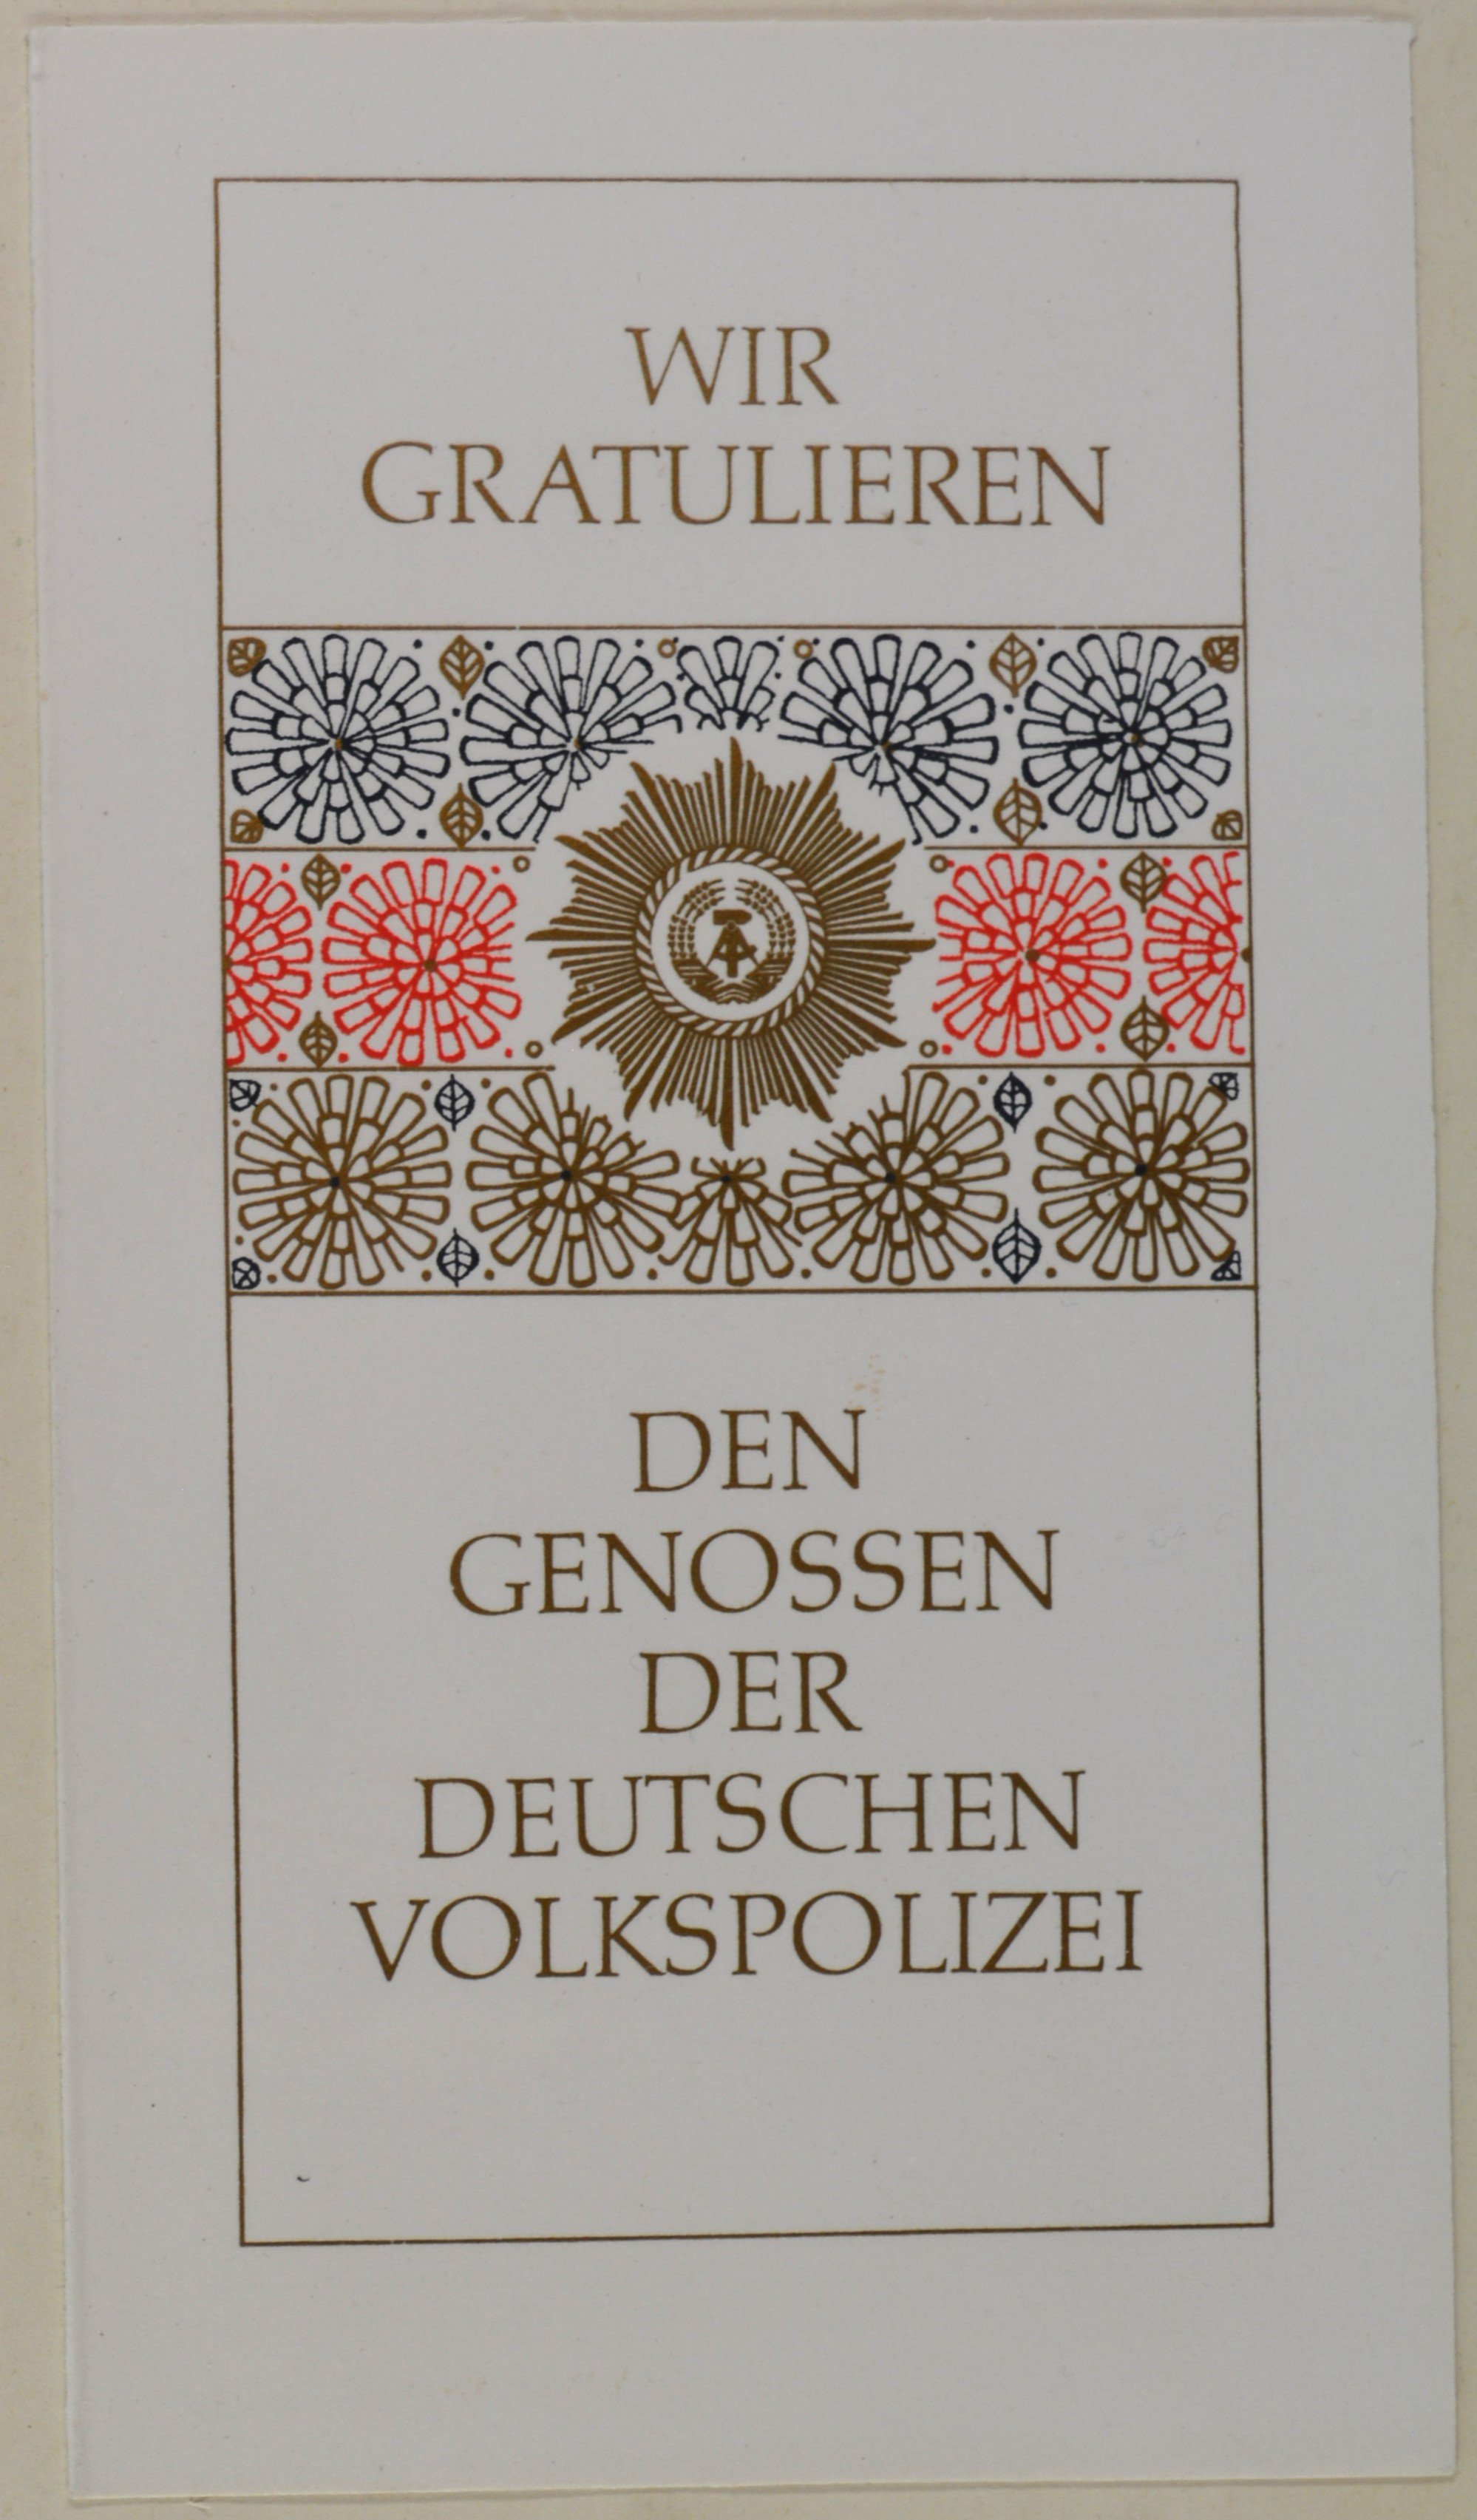 Glückwunschkarte für die Deutsche Volkspolizei (DDR Geschichtsmuseum im Dokumentationszentrum Perleberg CC BY-SA)